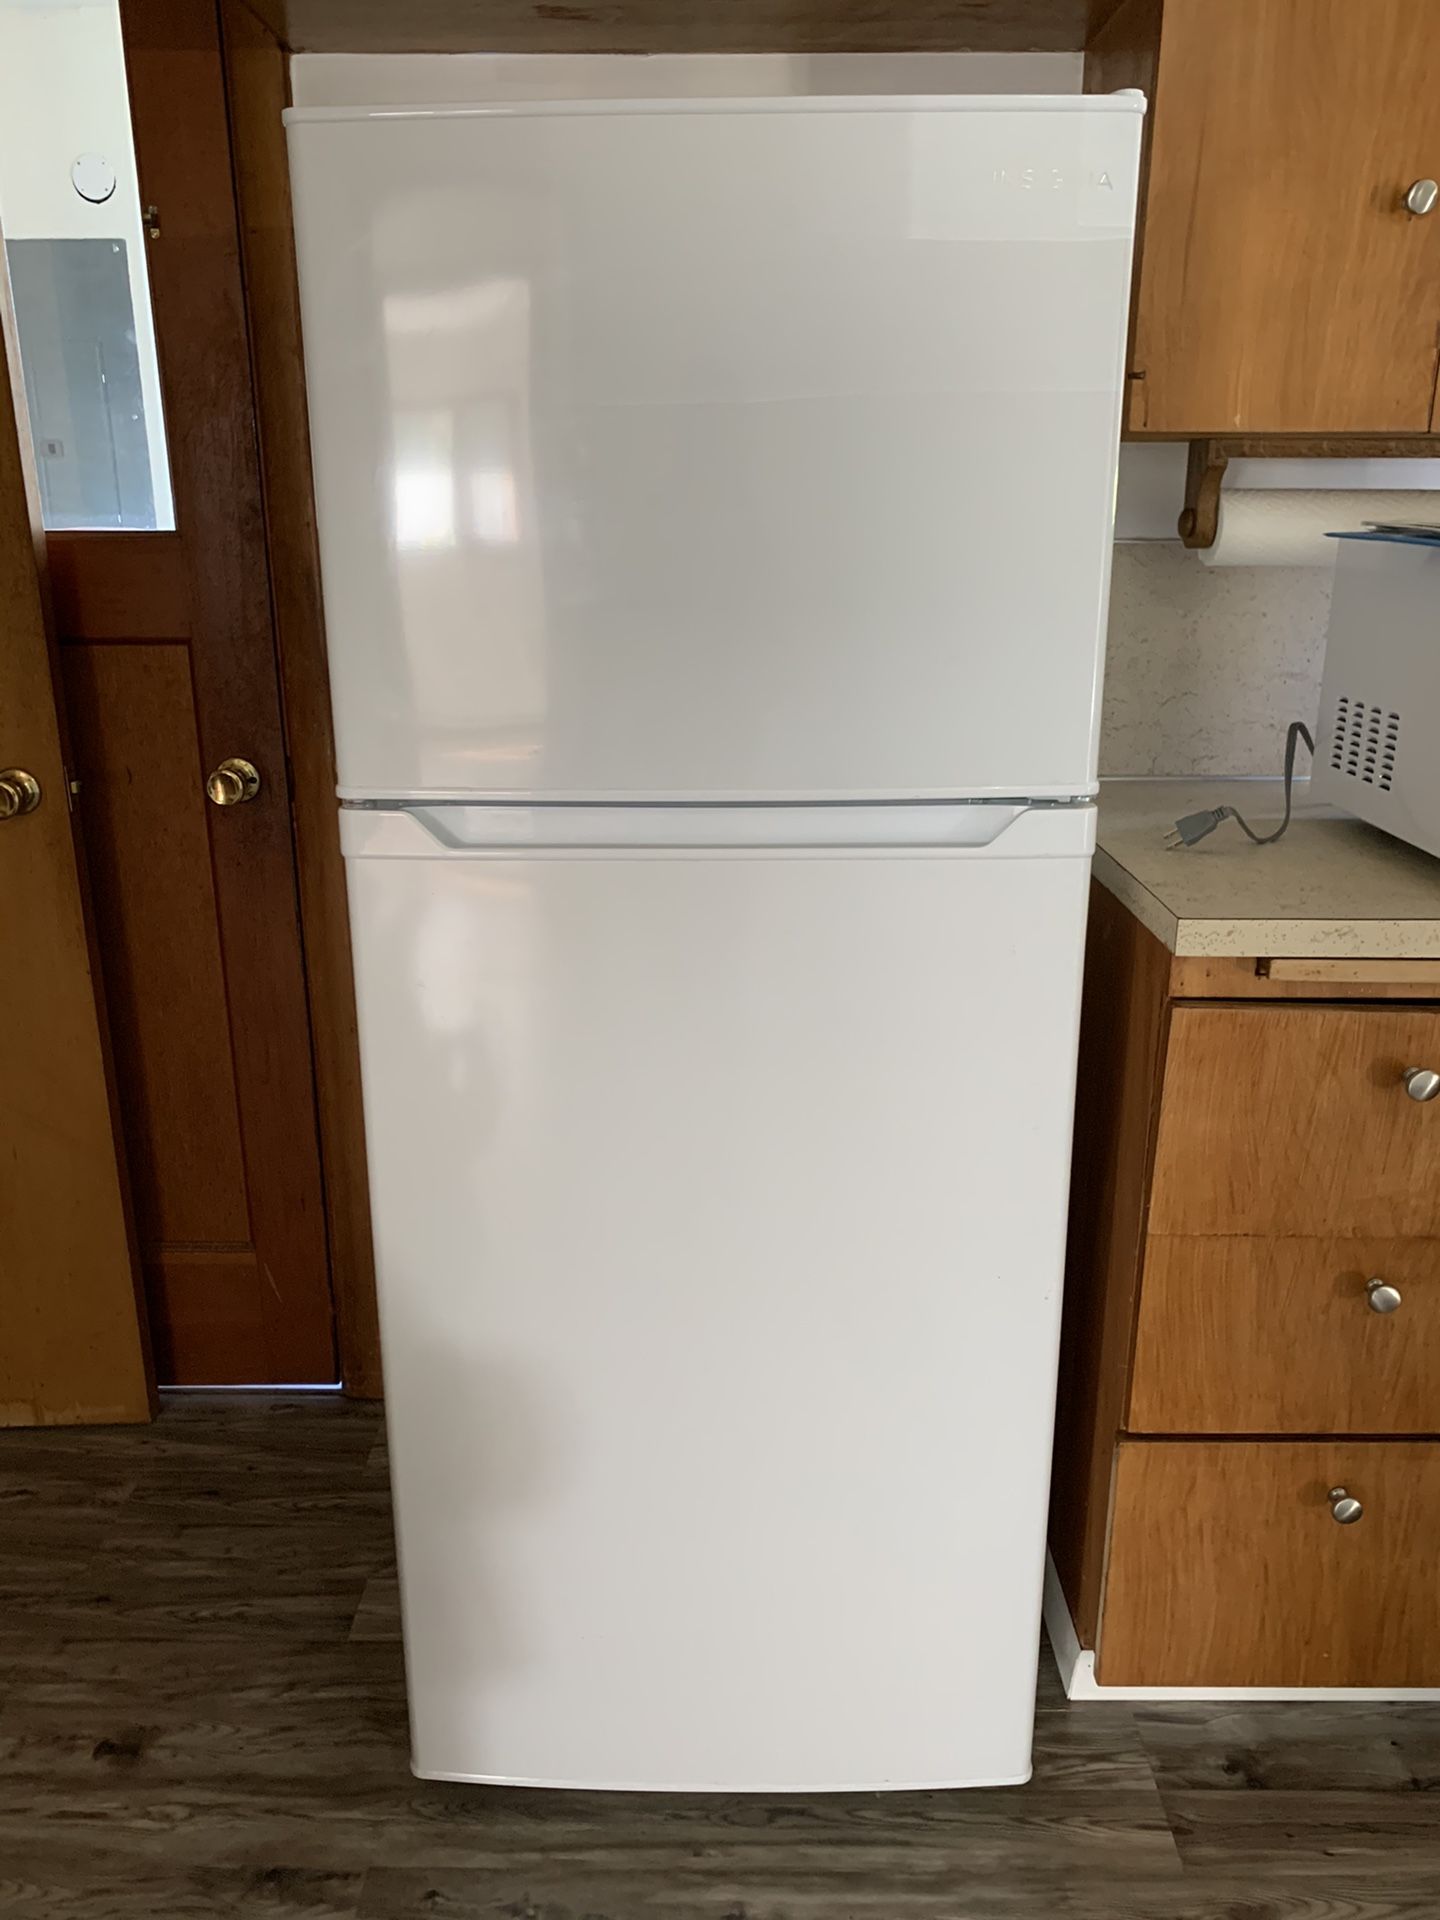 Insignia refrigerator